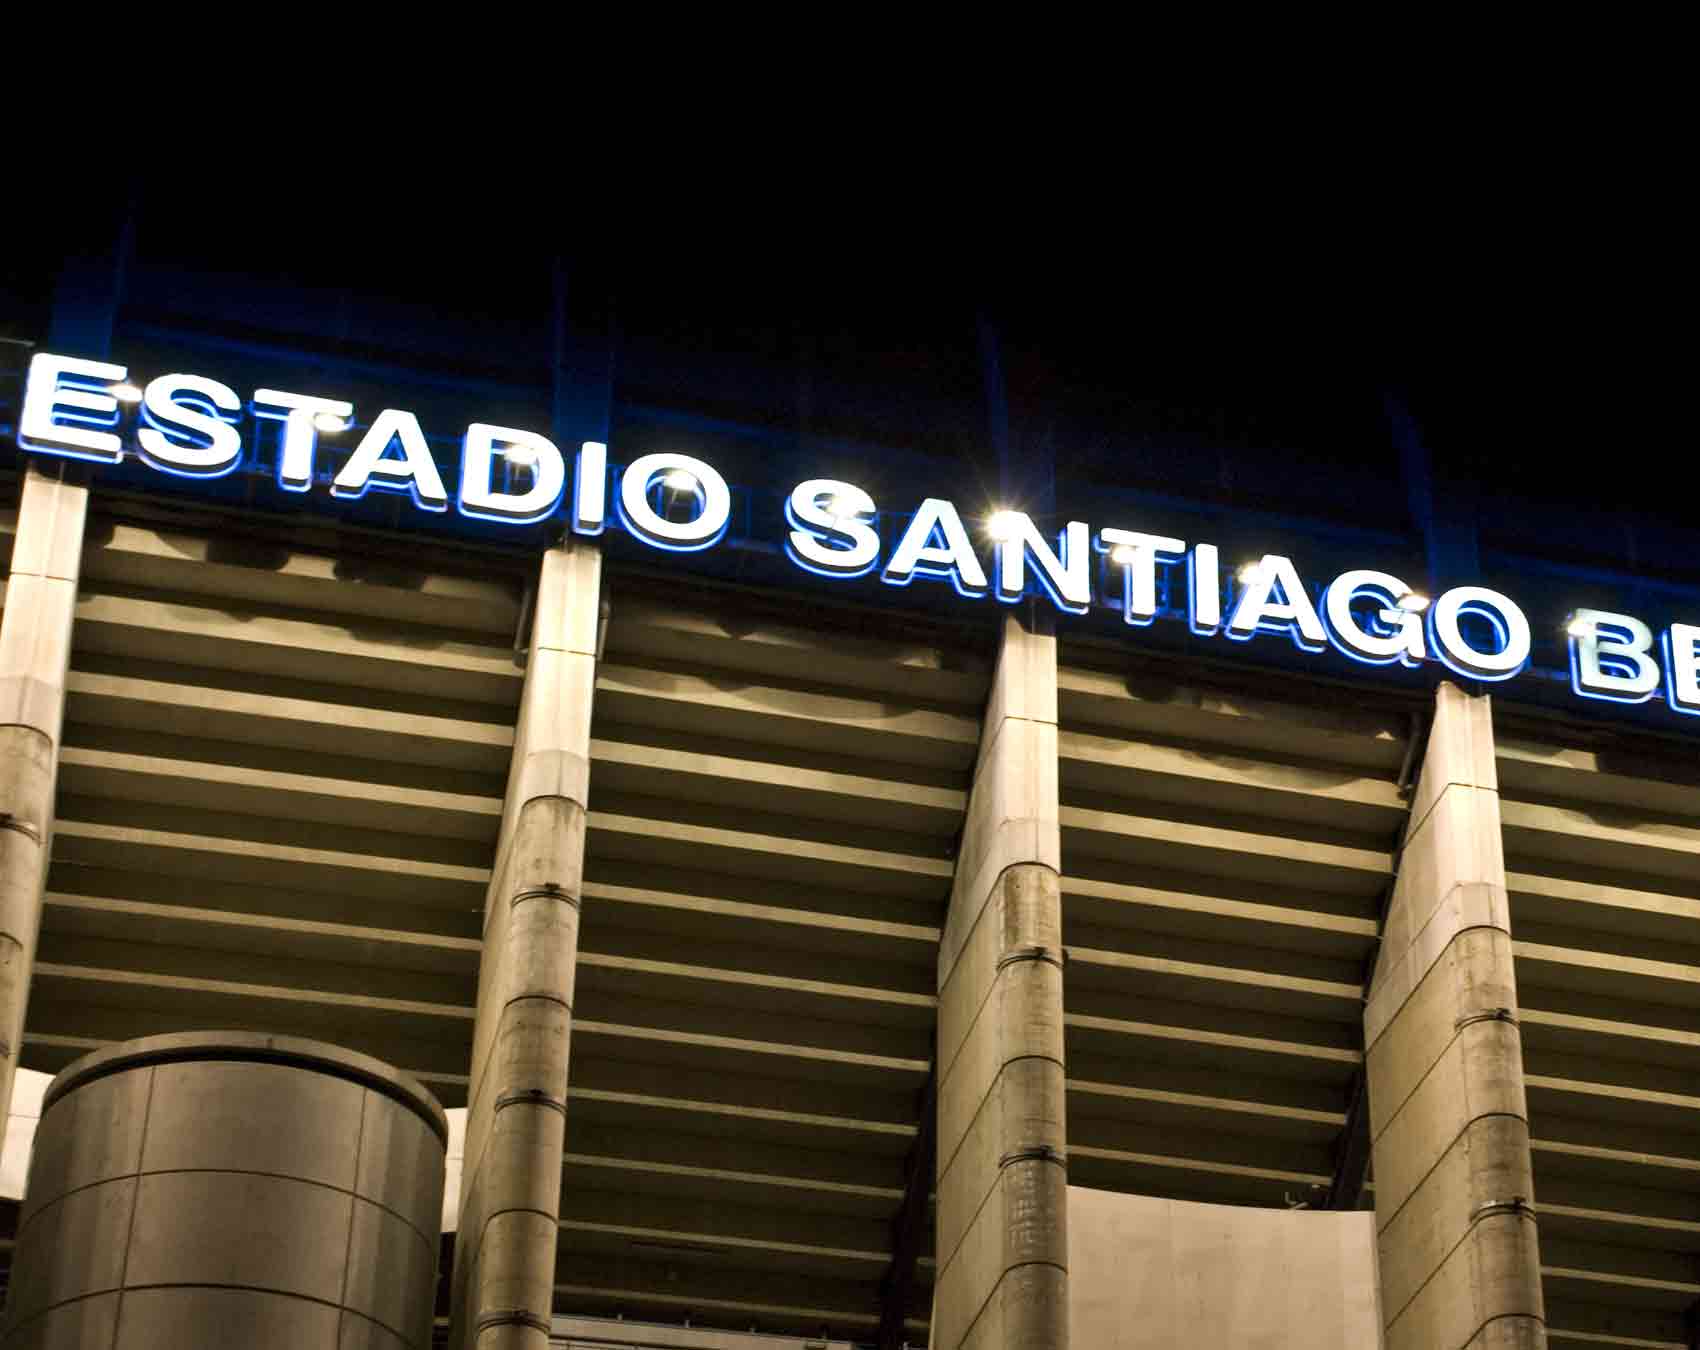 Entrada para el Tour Estadio Santiago Bernabéu